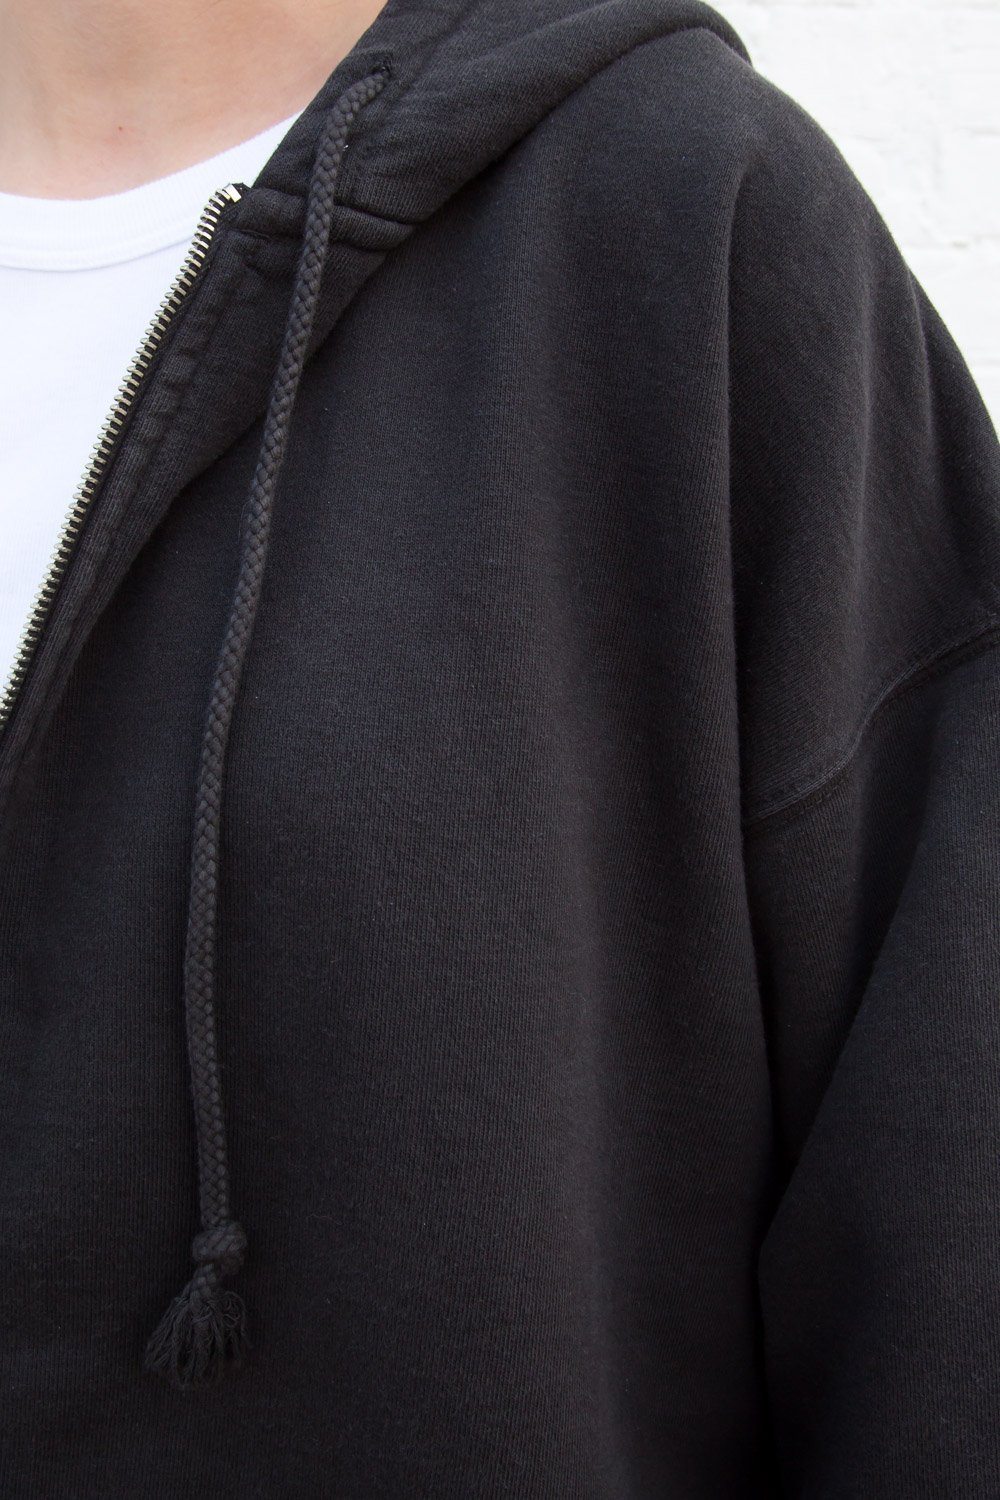 brandy melville black zip up hooded sweatshirt - International